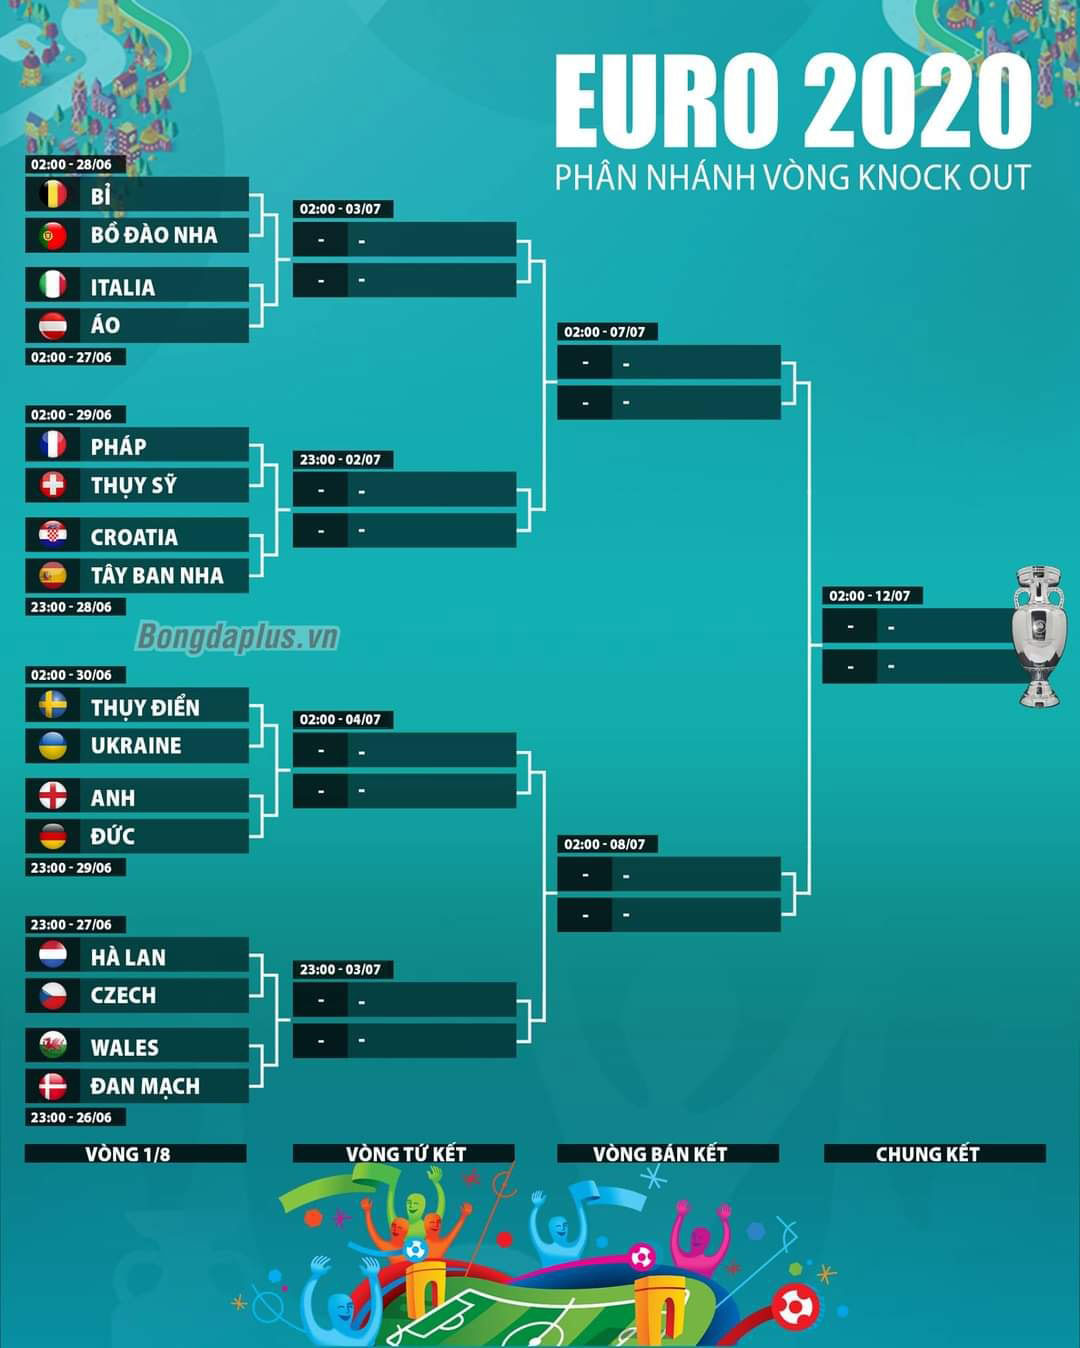 Phân nhánh các cặp đấu vòng knock-out EURO 2020